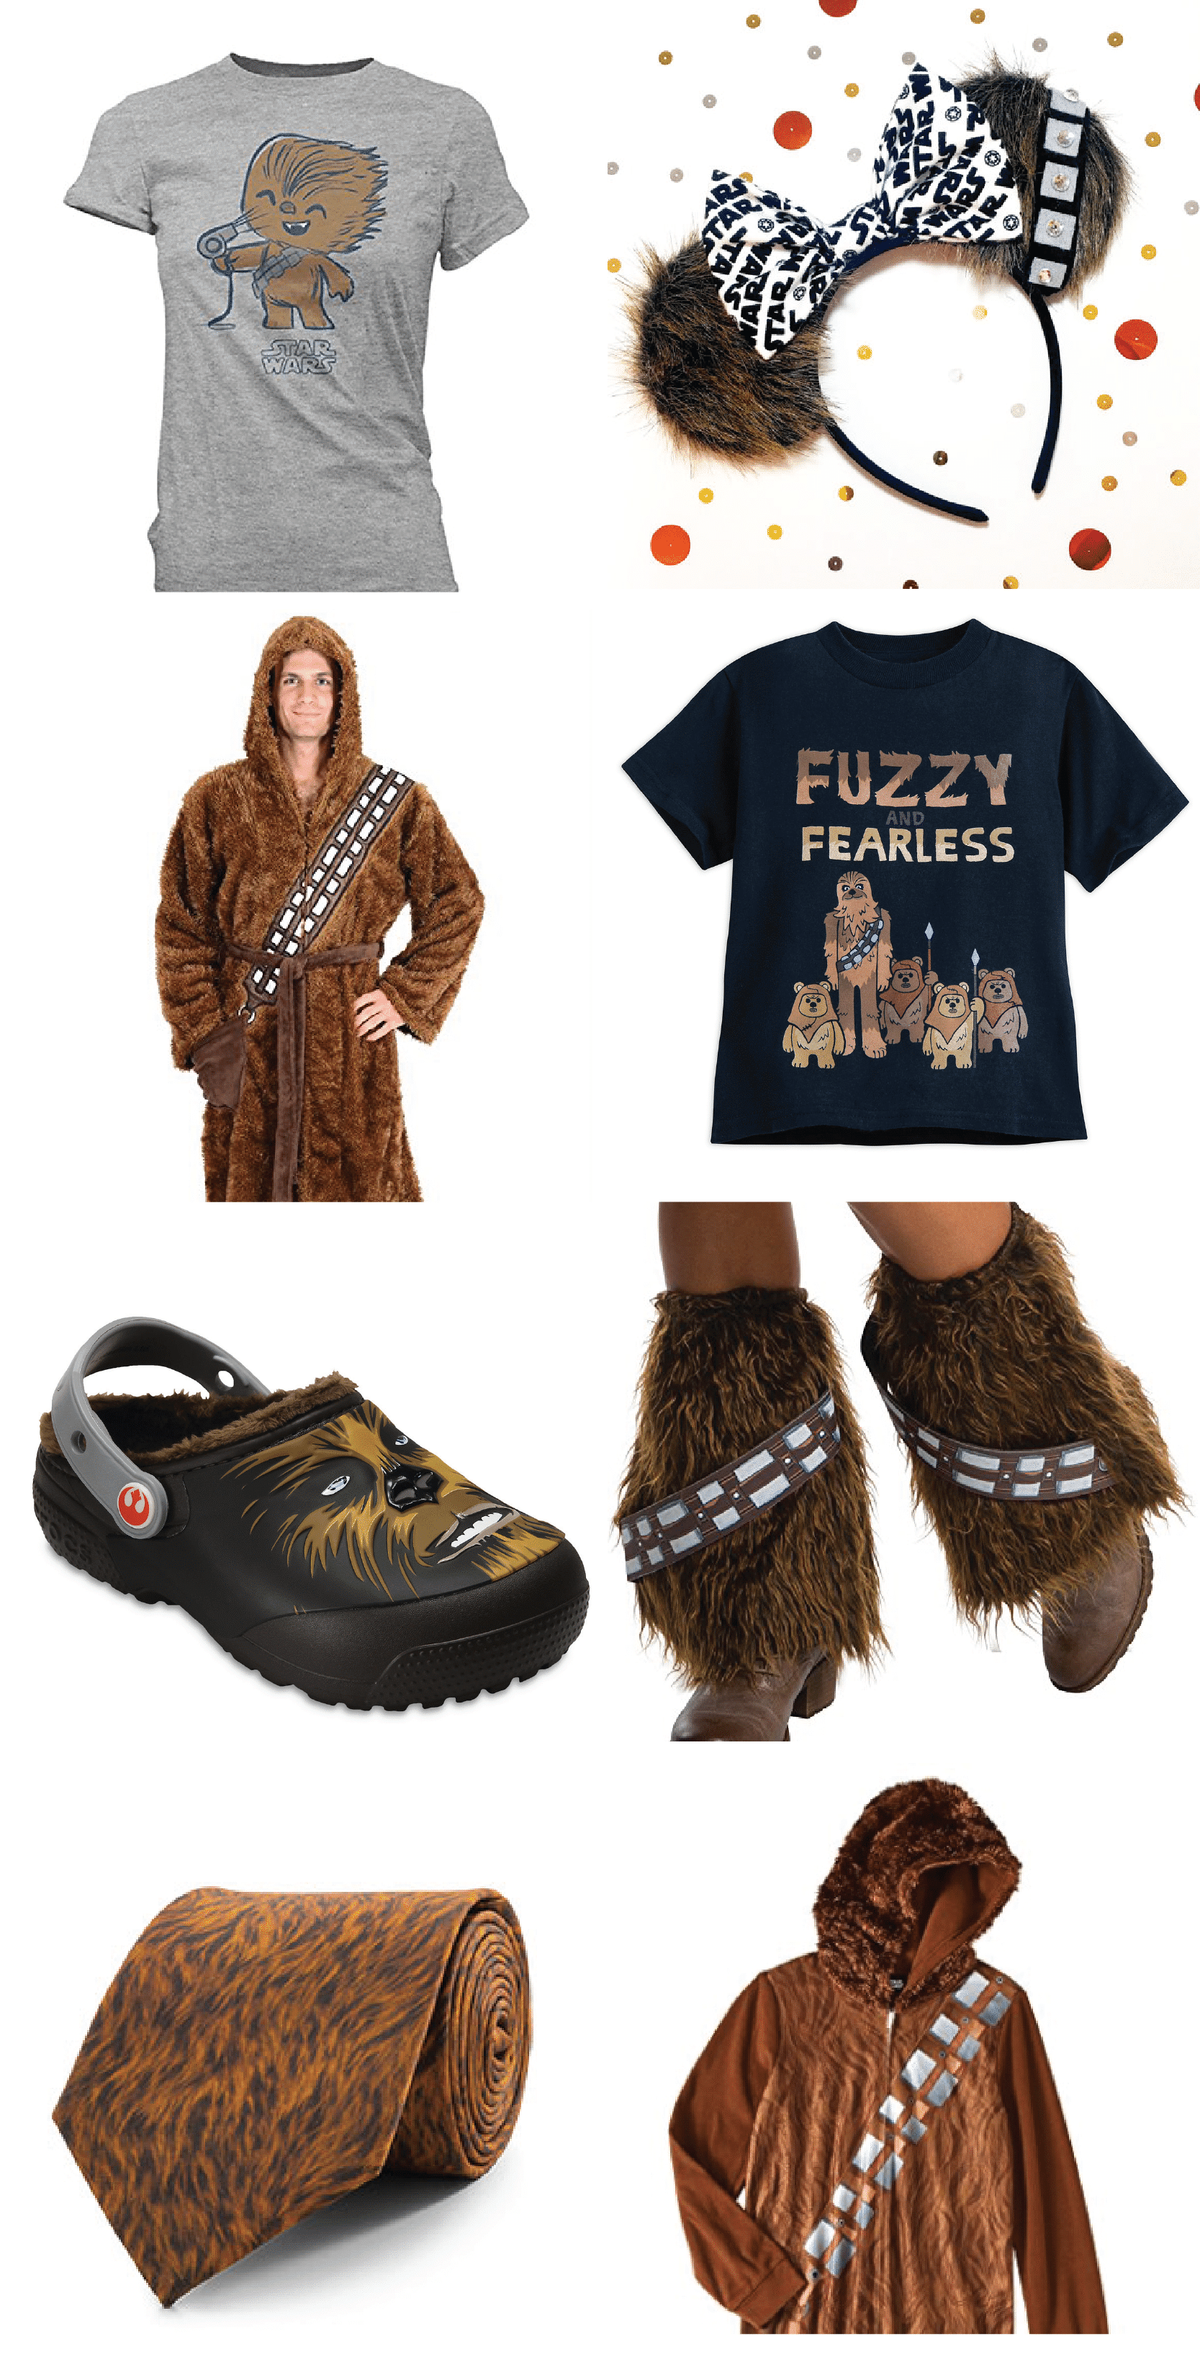 Kas vajate Tähtede sõja kingitust, et seda peole tuua? Need Chewbacca inspireeritud tooted on ühed parimad sünnipäevakingitused, Tähesõdade riided või tegelikult lihtsalt tooted inimestele, kes armastasid viimaseid jedisid